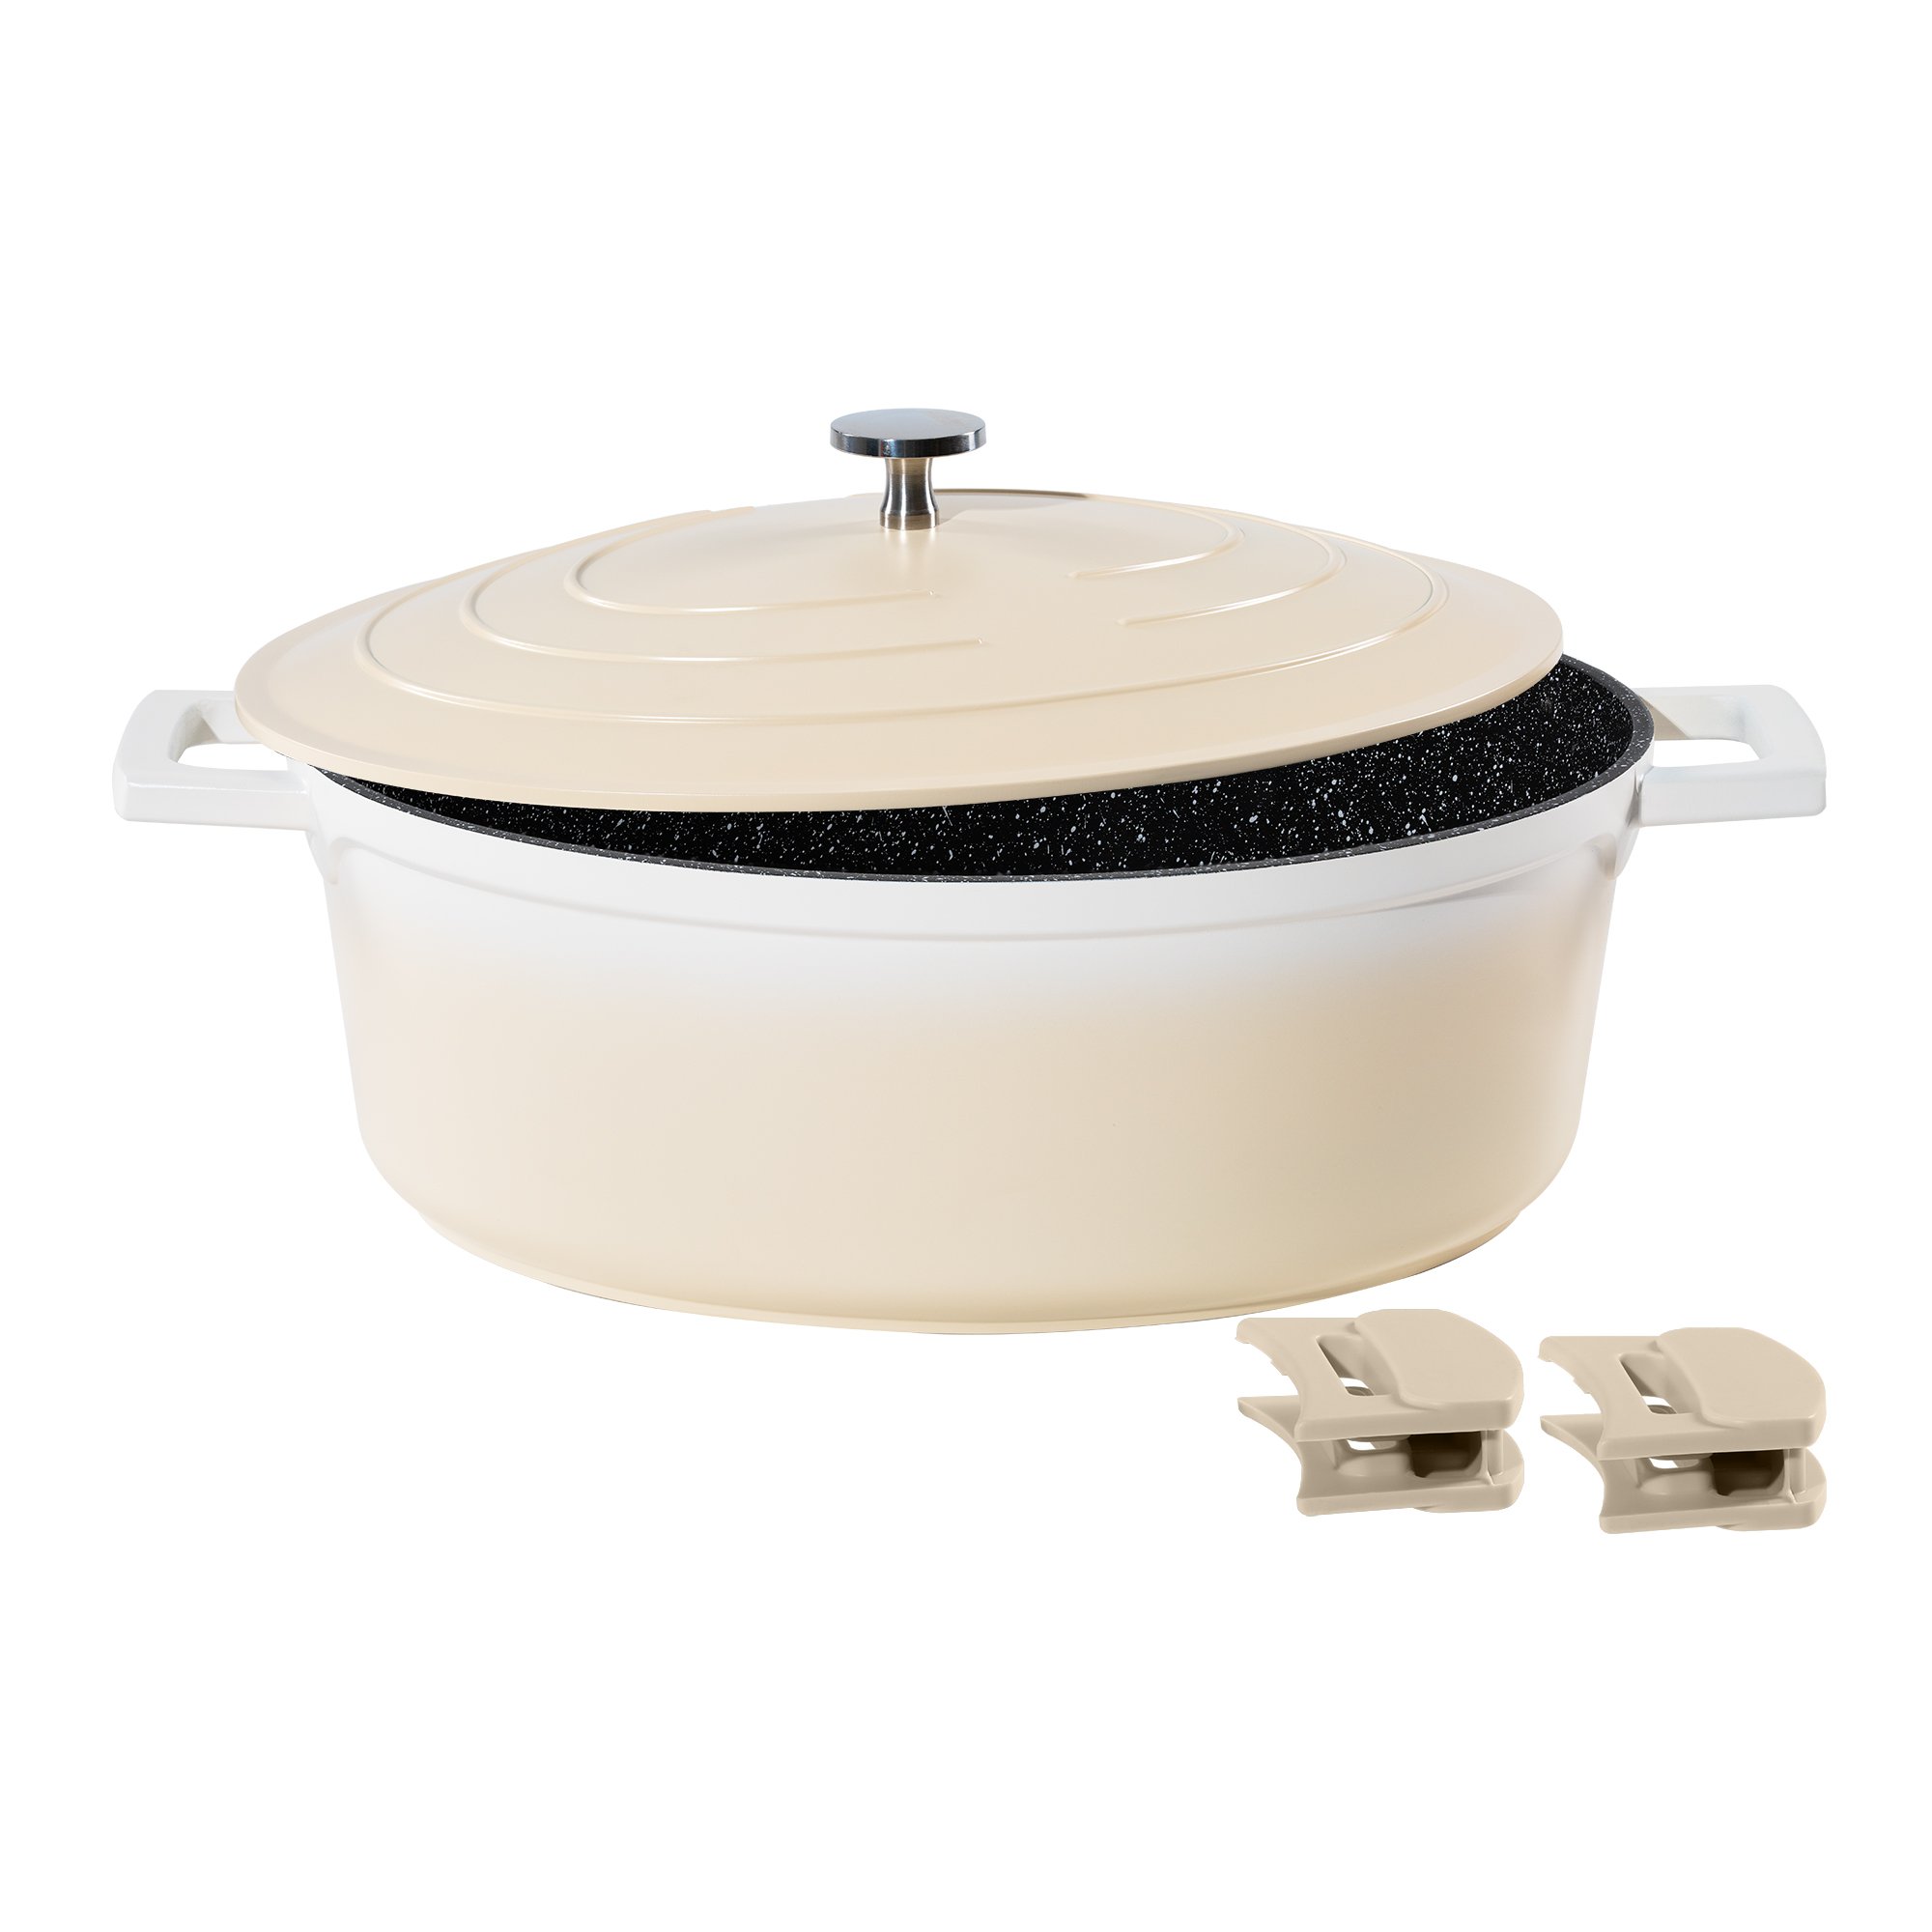 STONELINE® Crema Gourmet asador 32x25 cm con tapa, apto para horno e inducción, antiadherente